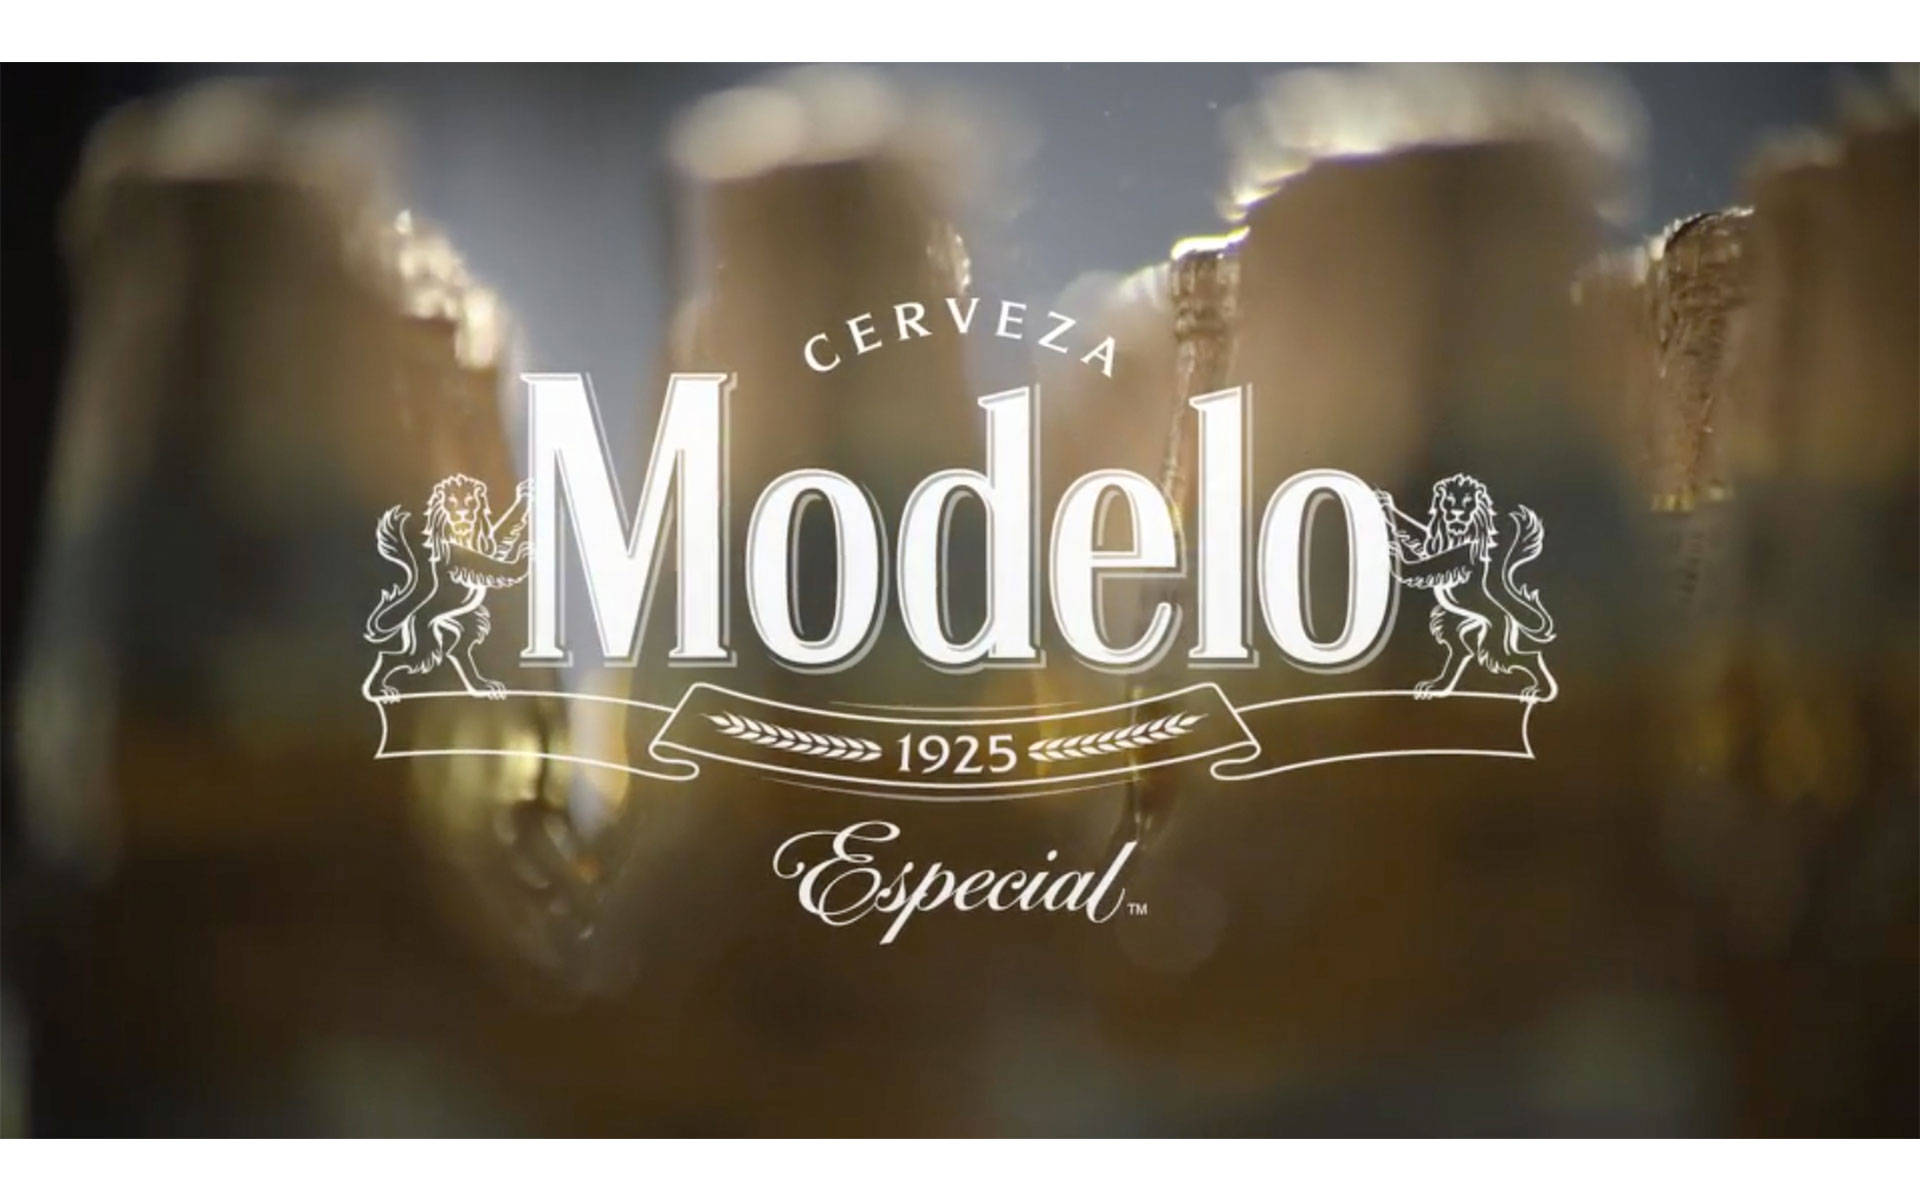 Modelo Especial Brand Logo Wallpaper